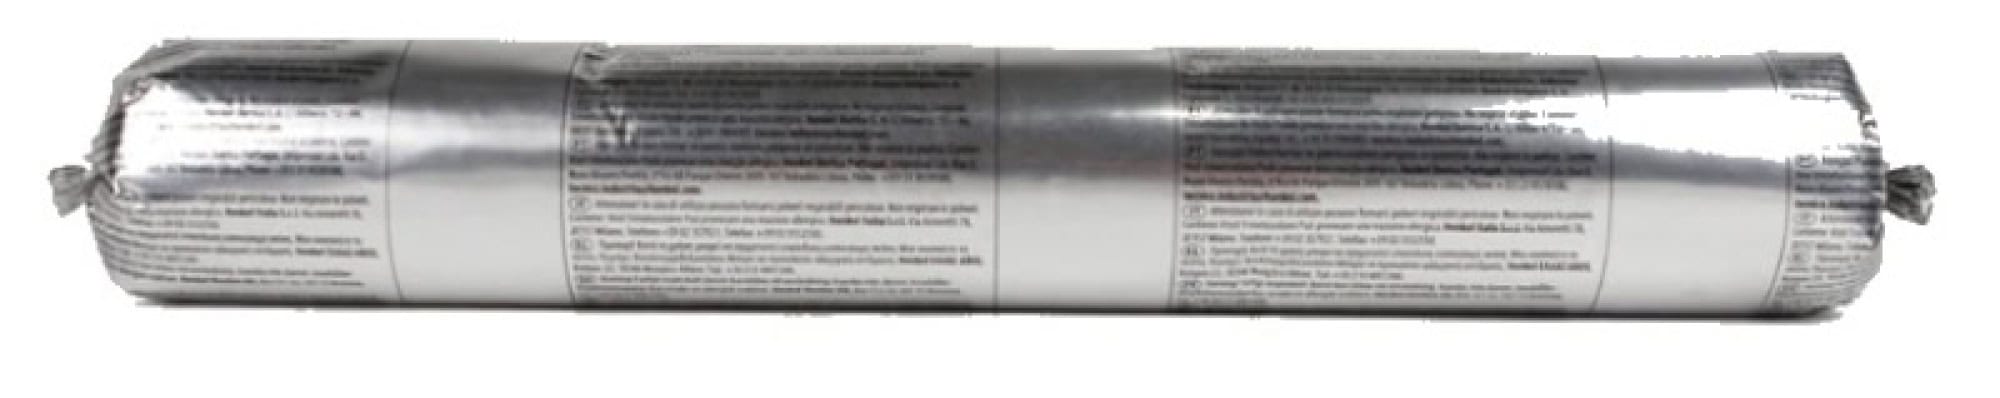 Henkel™ Teroson® Silanmodifizierter Polymer Kleb-/Dichtstoff MS 930, 570 ml Folienbeutel,  Weiß, Thixotrop, 1K, 2496649, Für Universelle Anwendungen